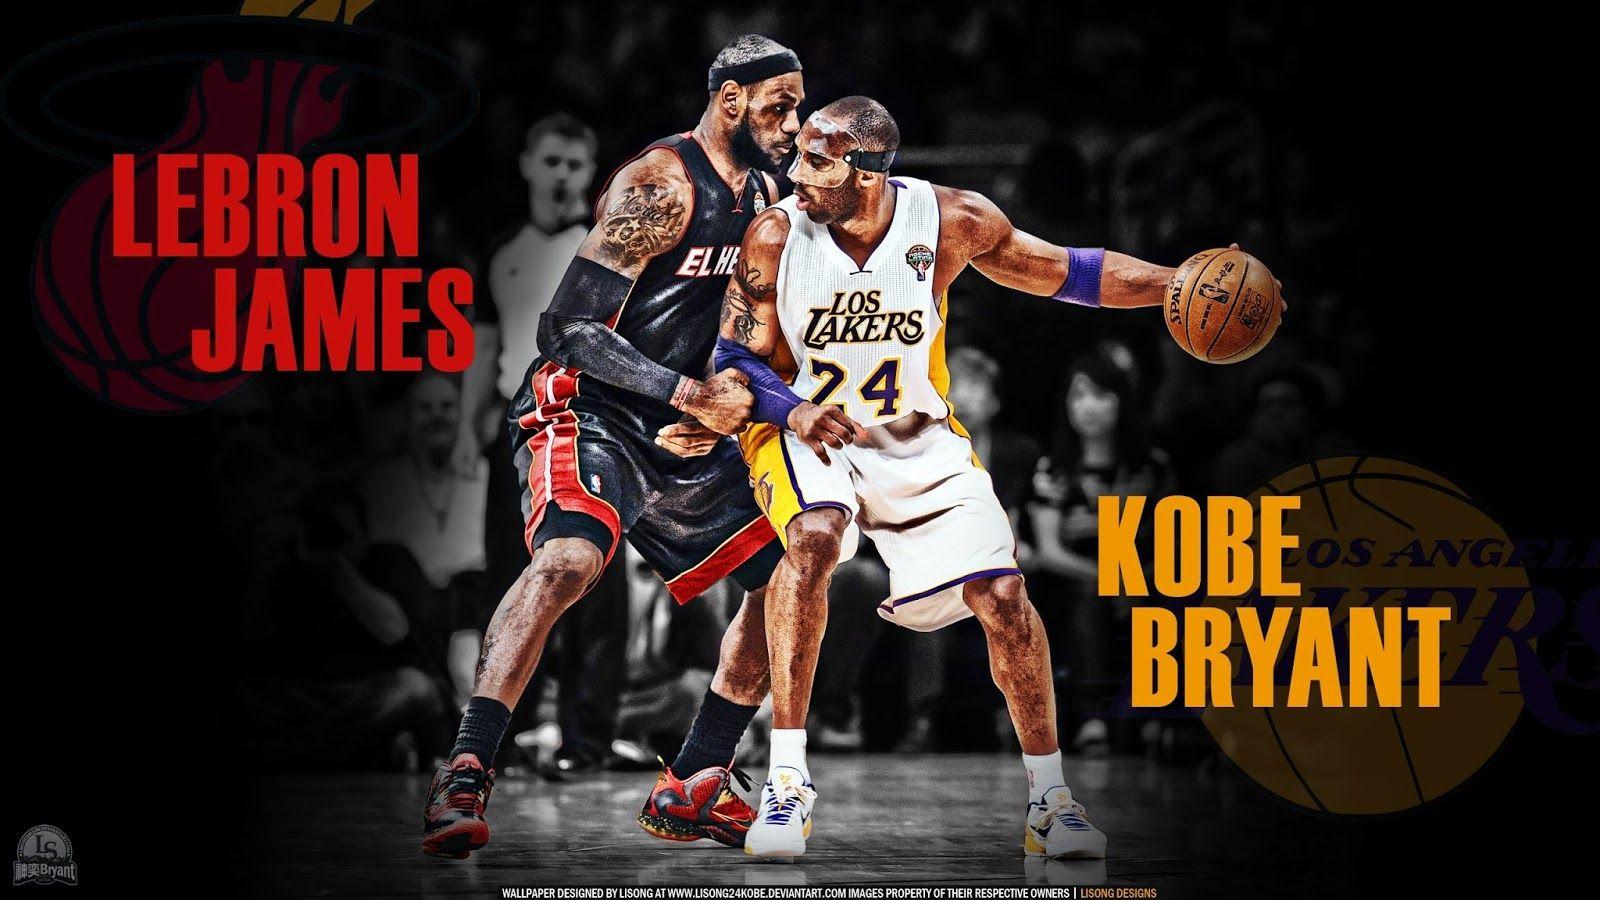 Kobe vs Lebron, who is better: August 2015